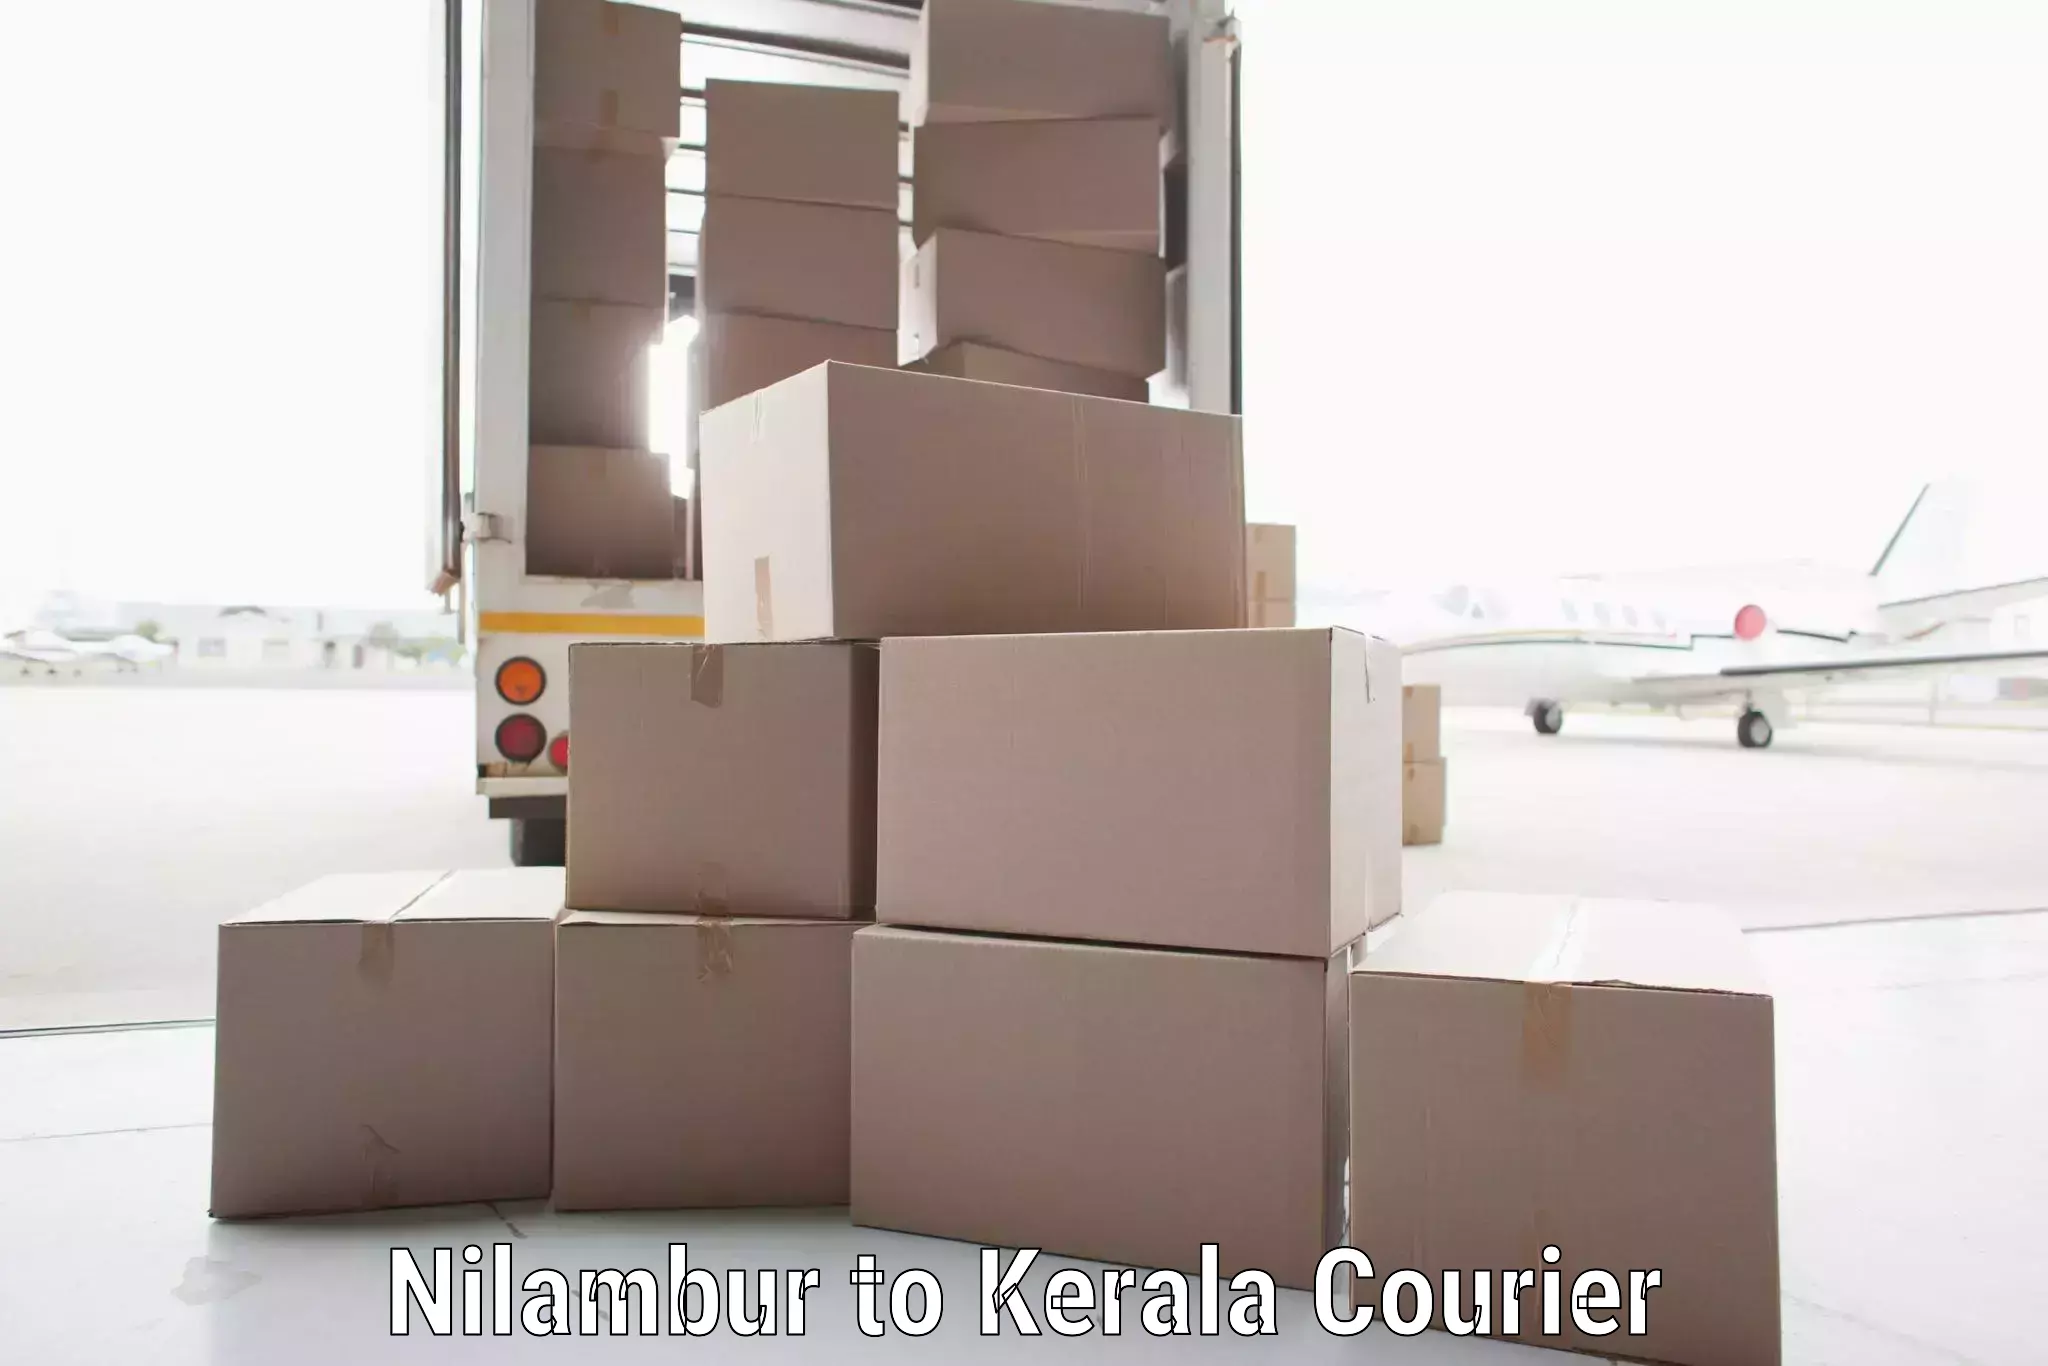 Customer-focused courier Nilambur to Kerala